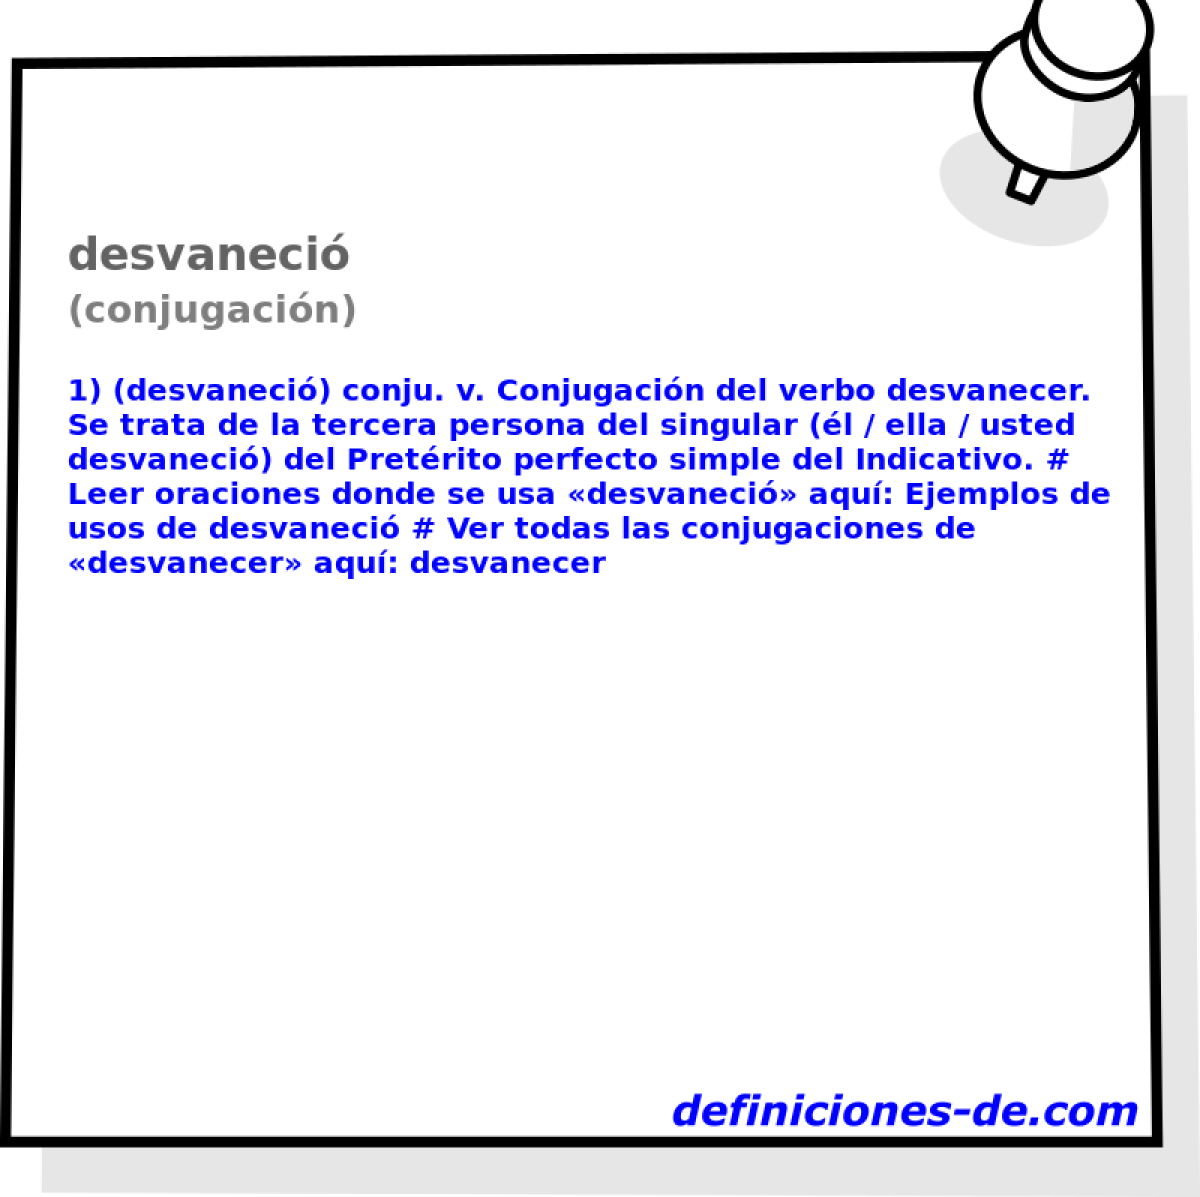 desvaneci (conjugacin)